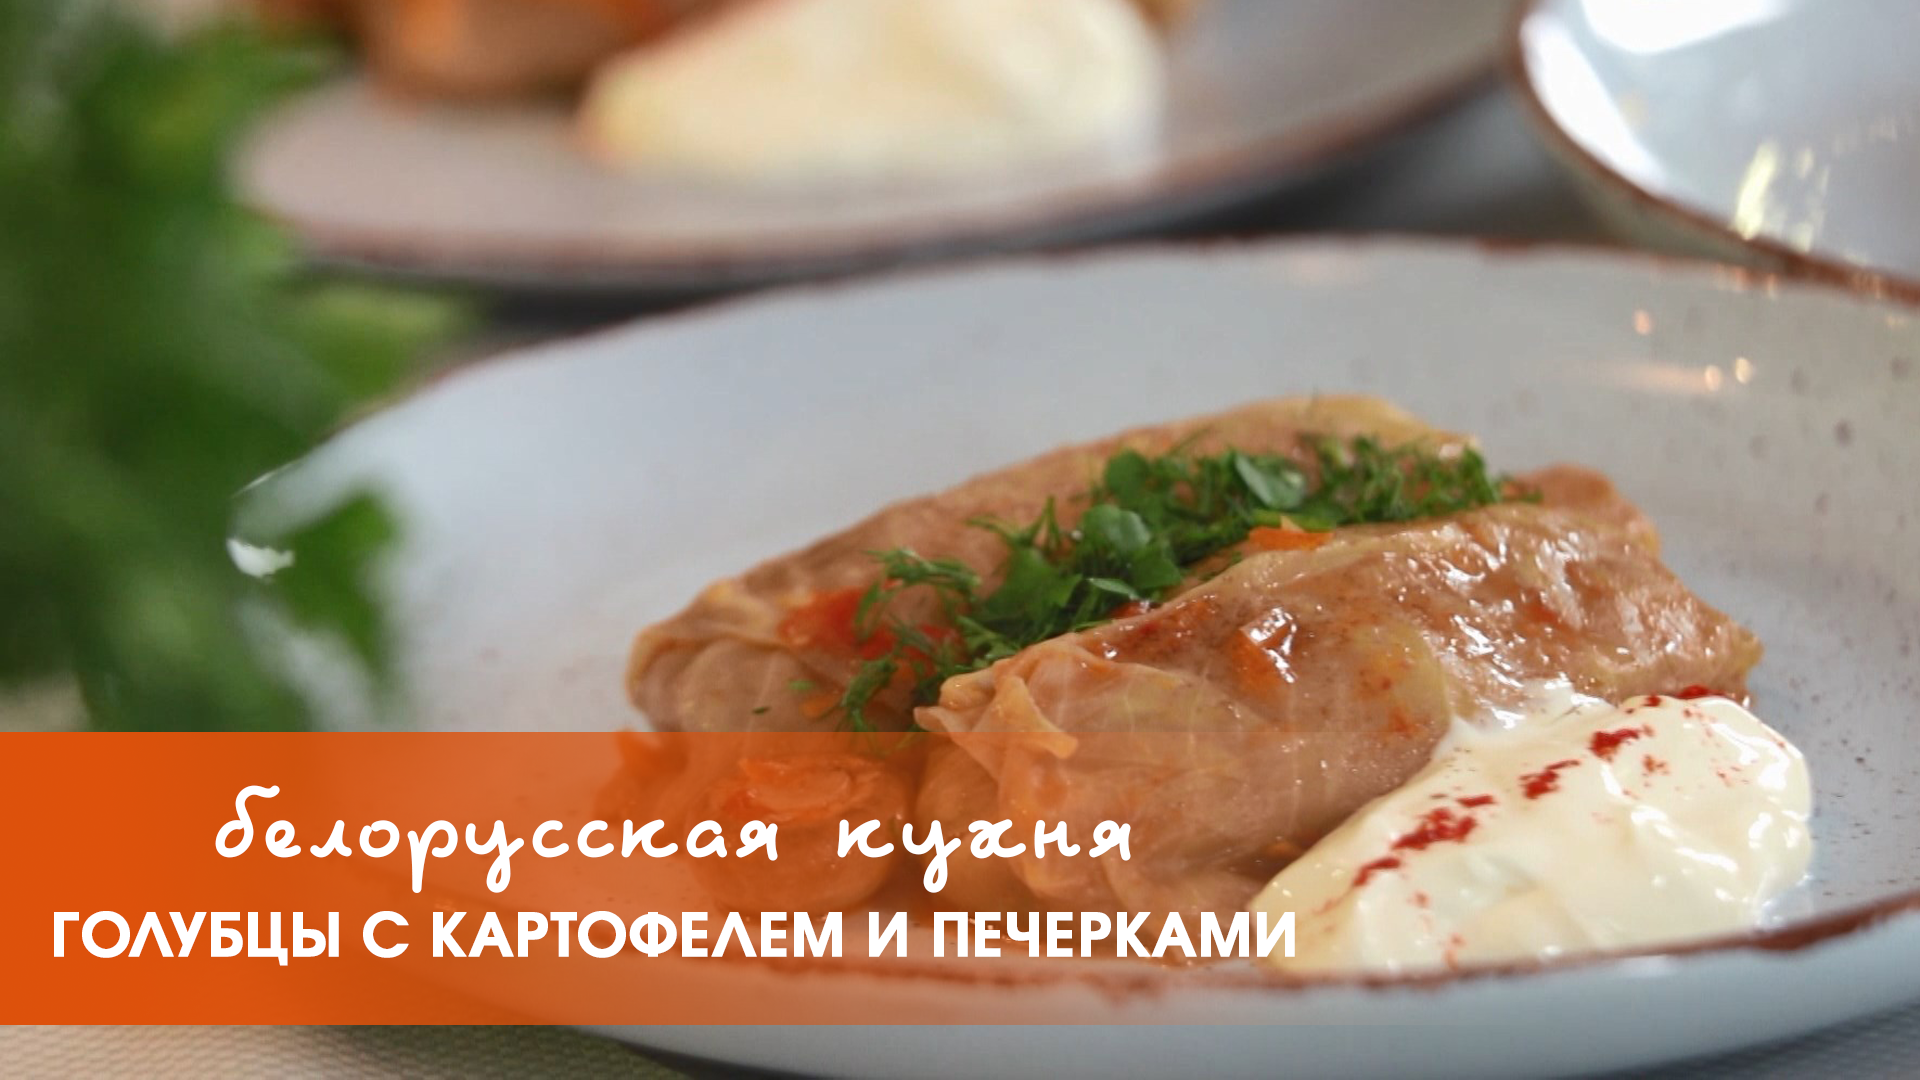 Белорусская кухня: голубцы с картофелем и печерками